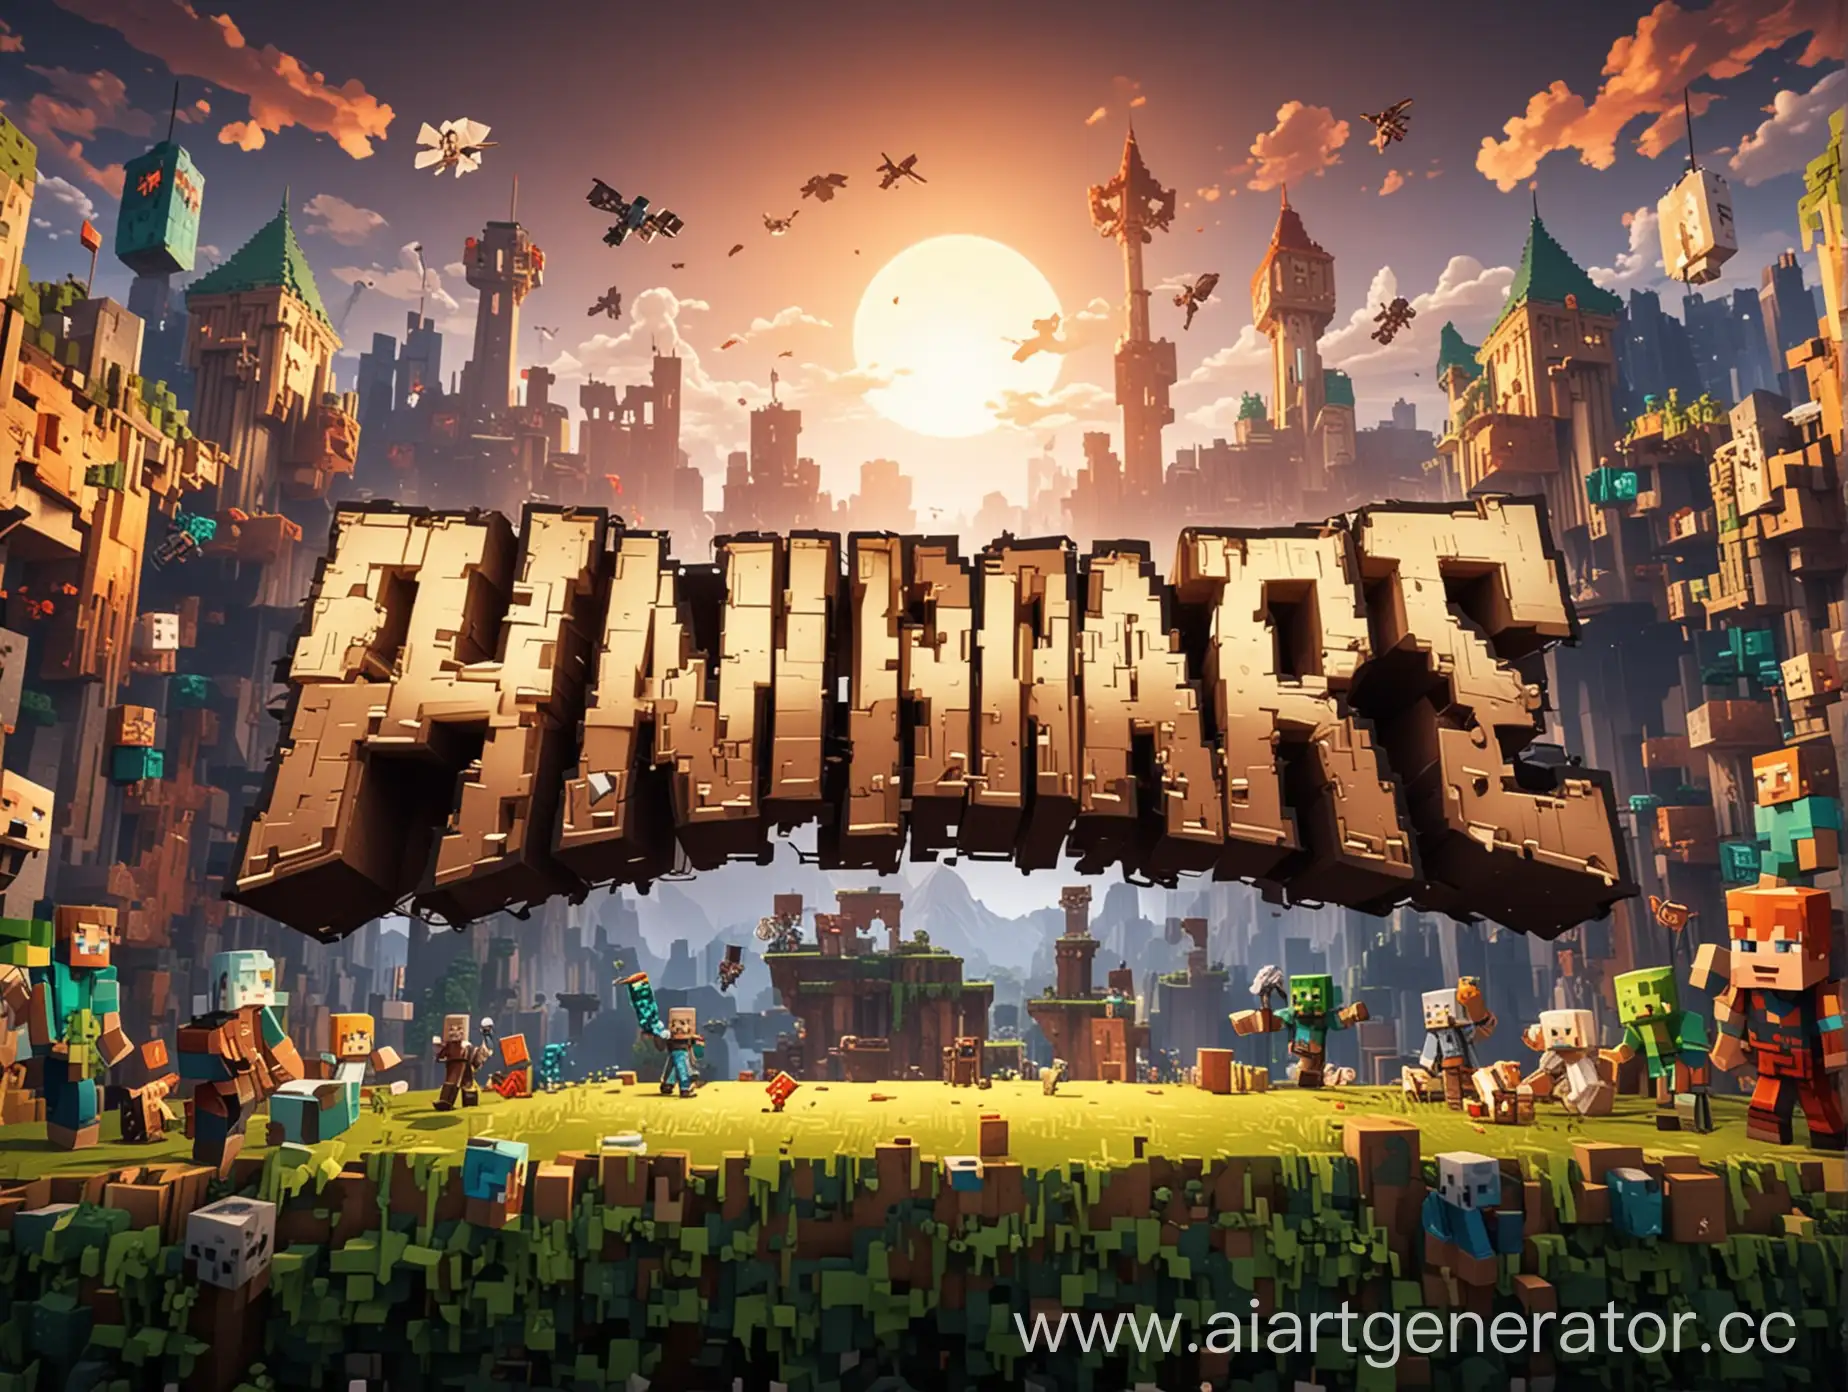 MinecraftInspired-PHSPLAY-Banner-amidst-Bedwars-MiniGame